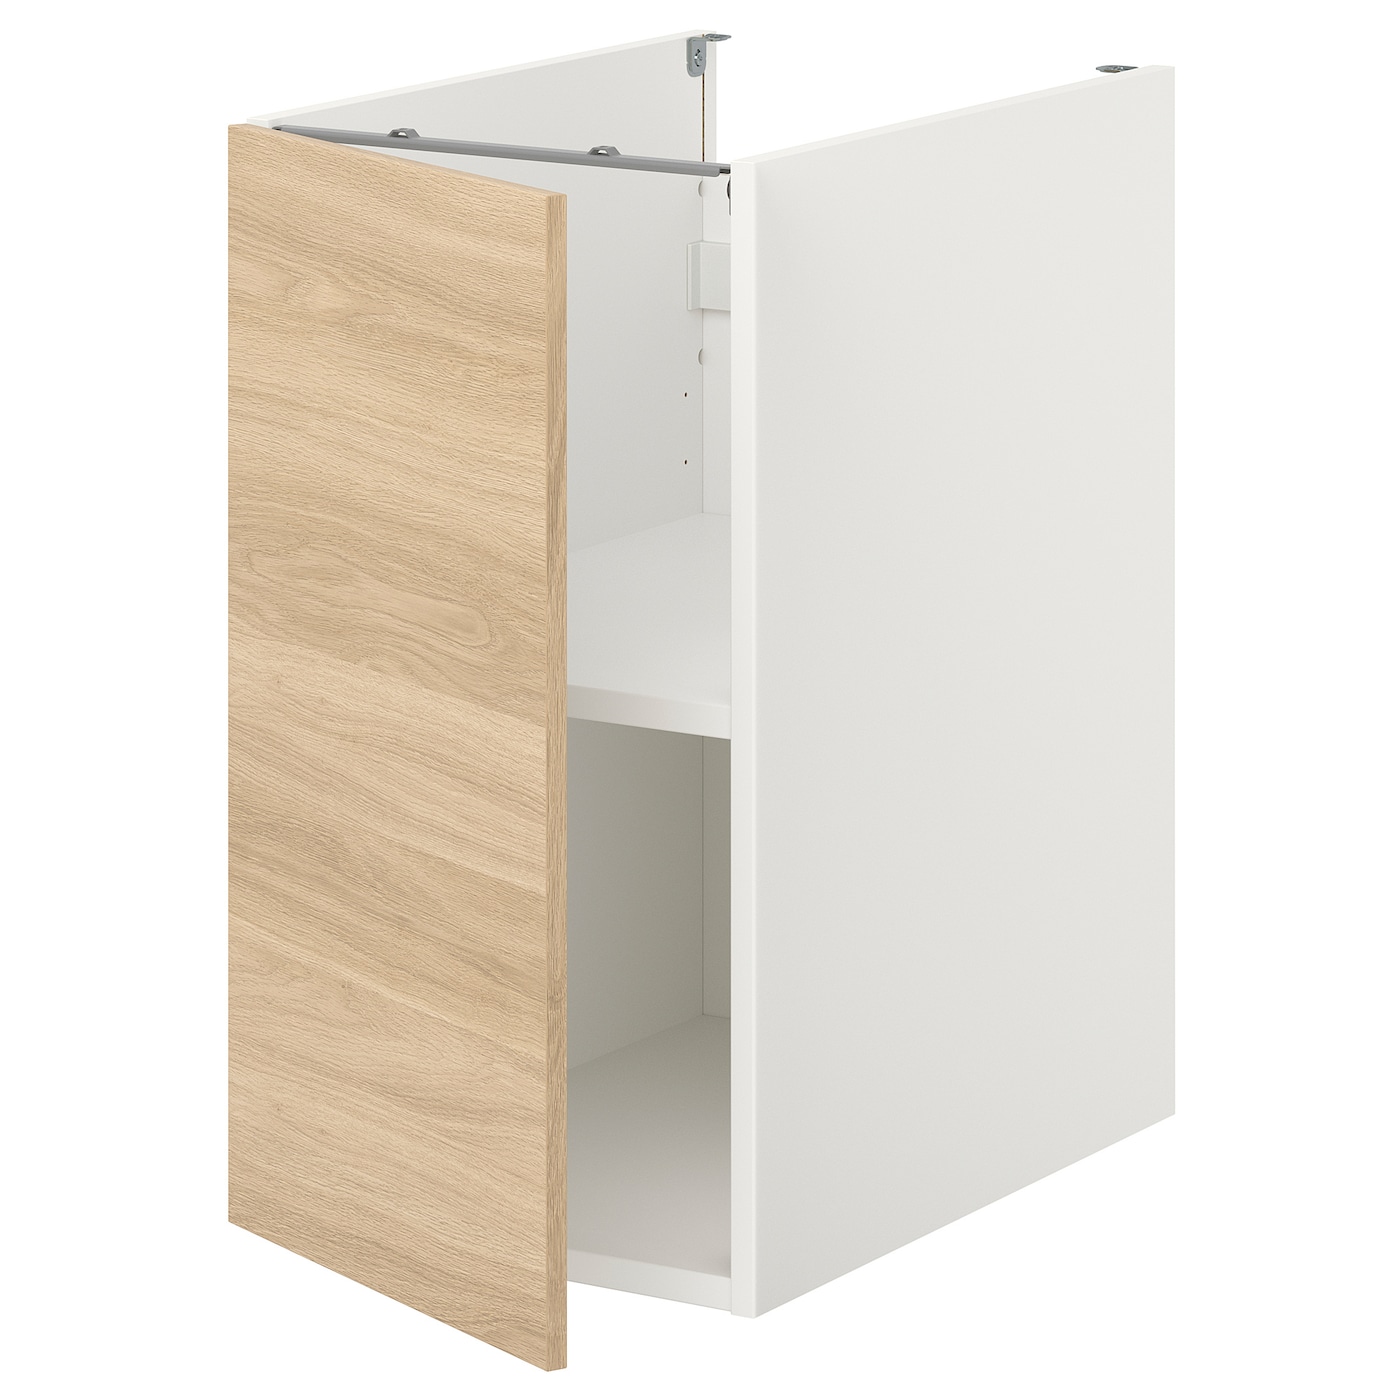 Напольный шкаф с дверцами - IKEA ENHET, 75x62x40см, белый/светло-коричневый, ЭХНЕТ ИКЕА